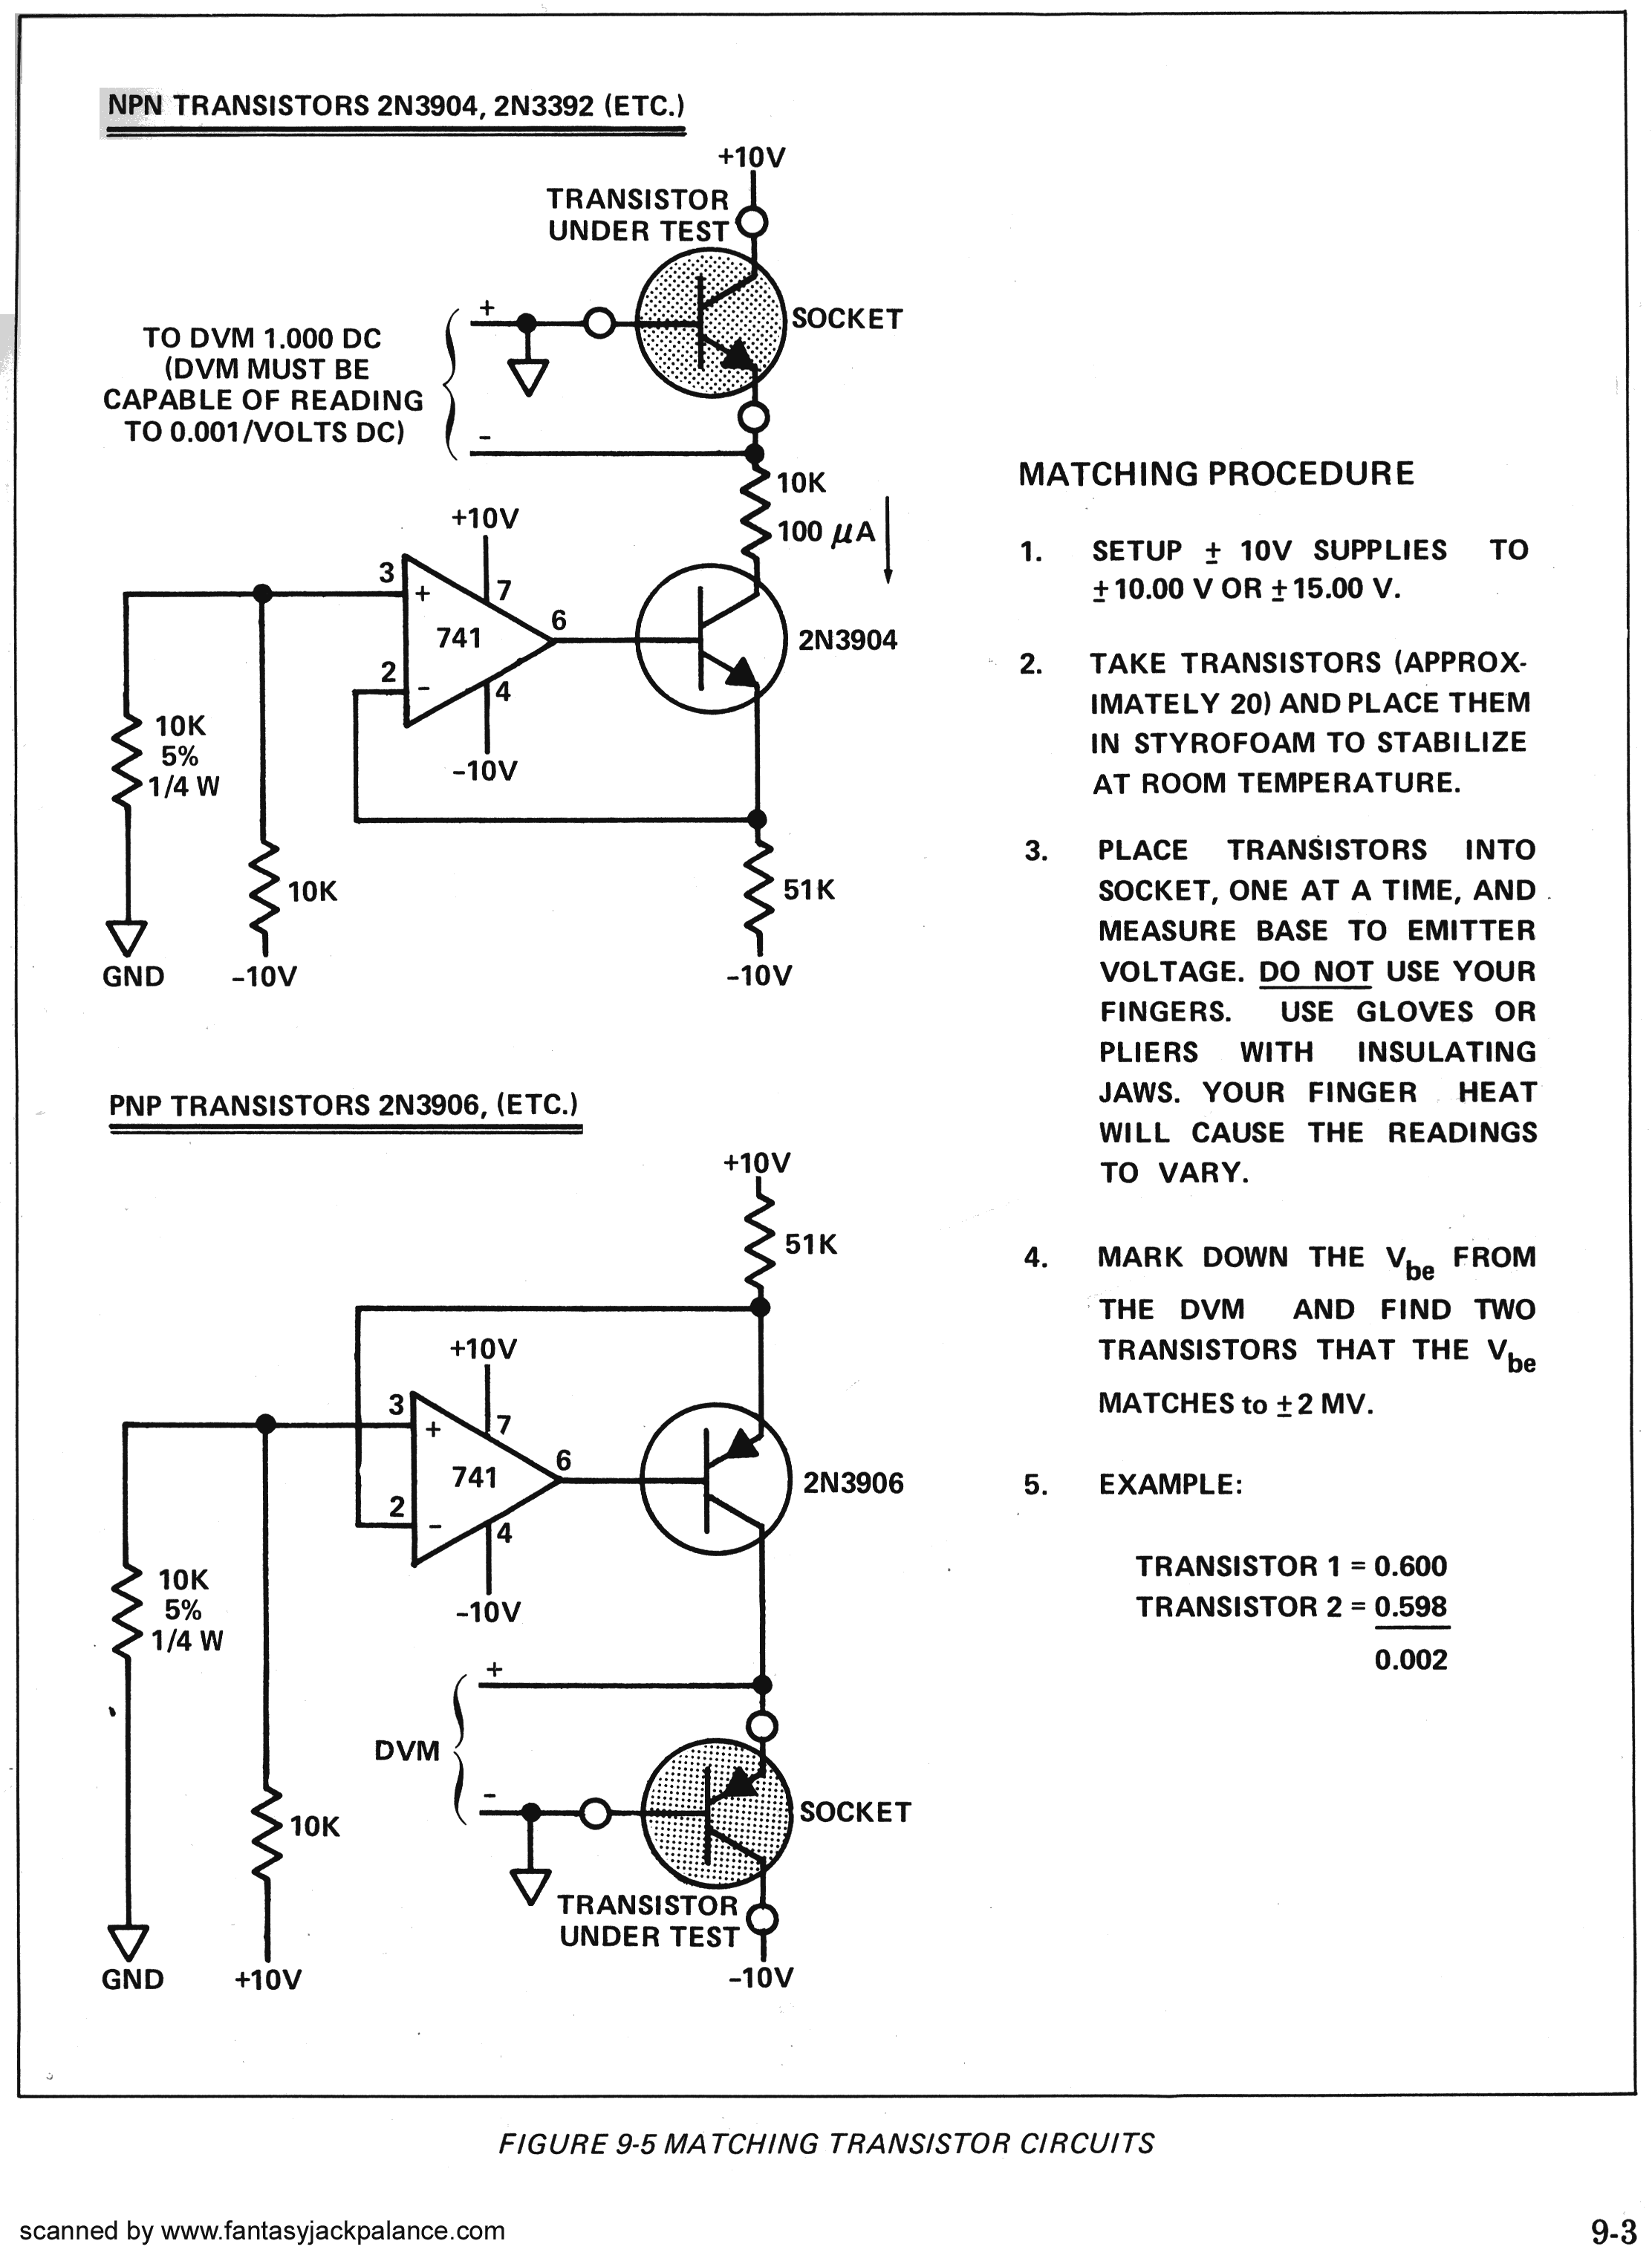 905-matching-transistor.gif